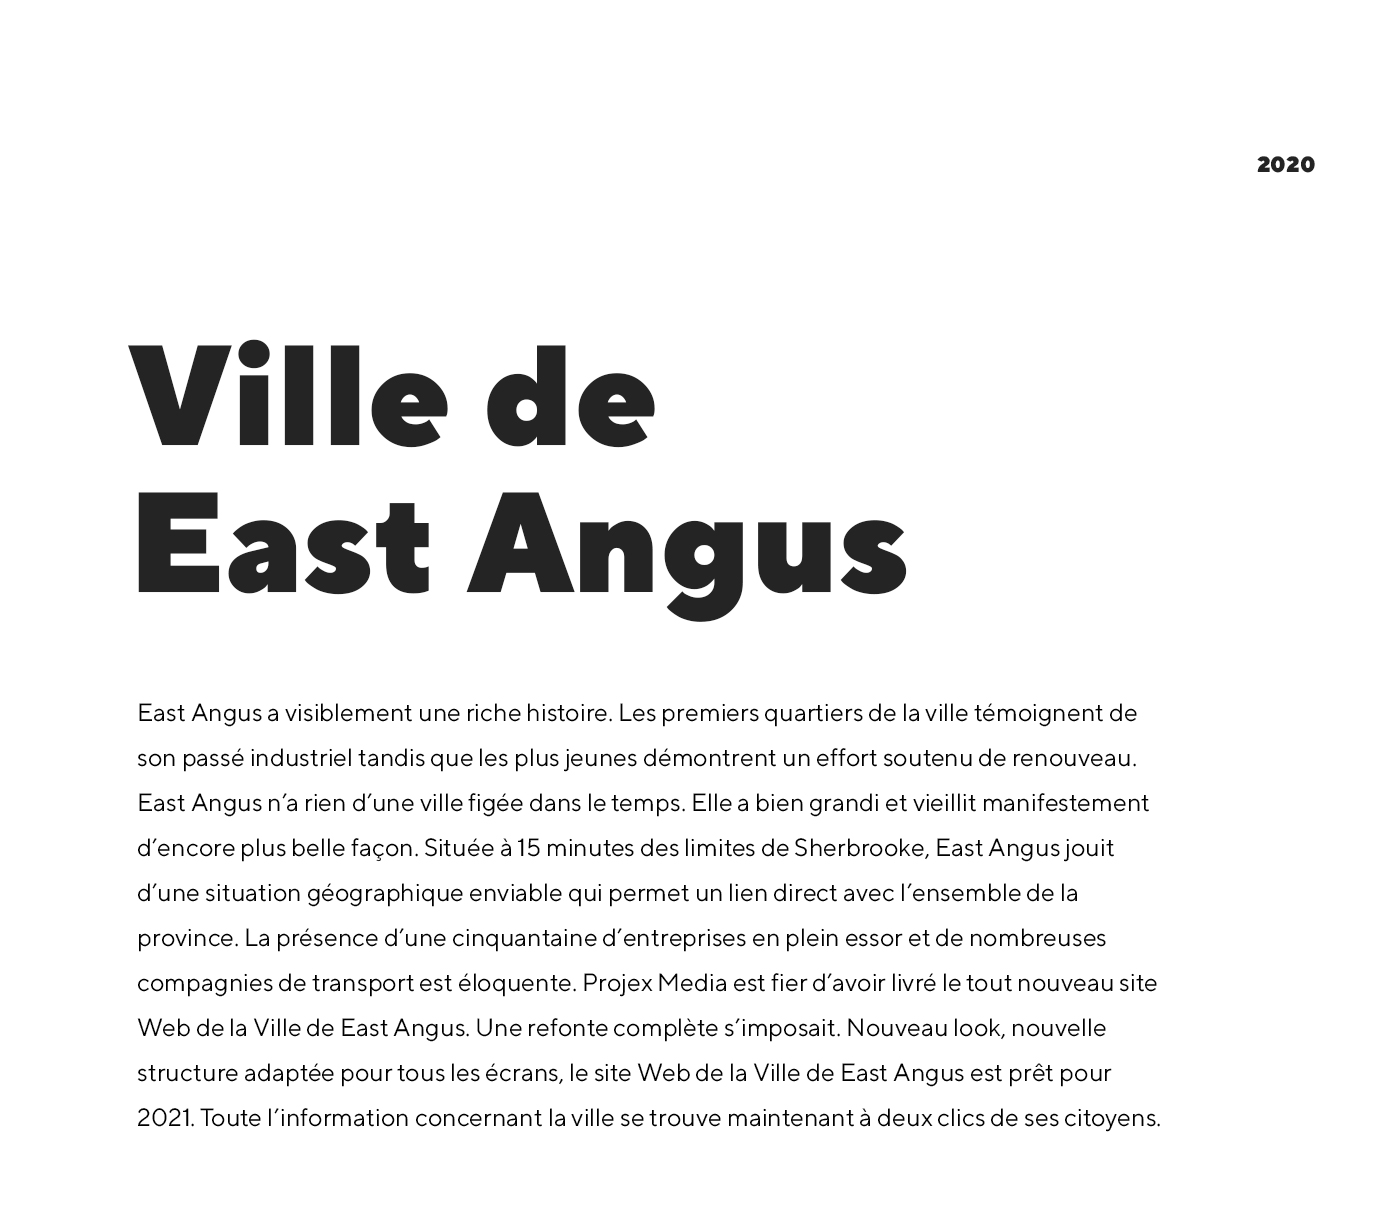 Site Web de la Ville de East Angus / 2020 - Réalisation signée Projex Media